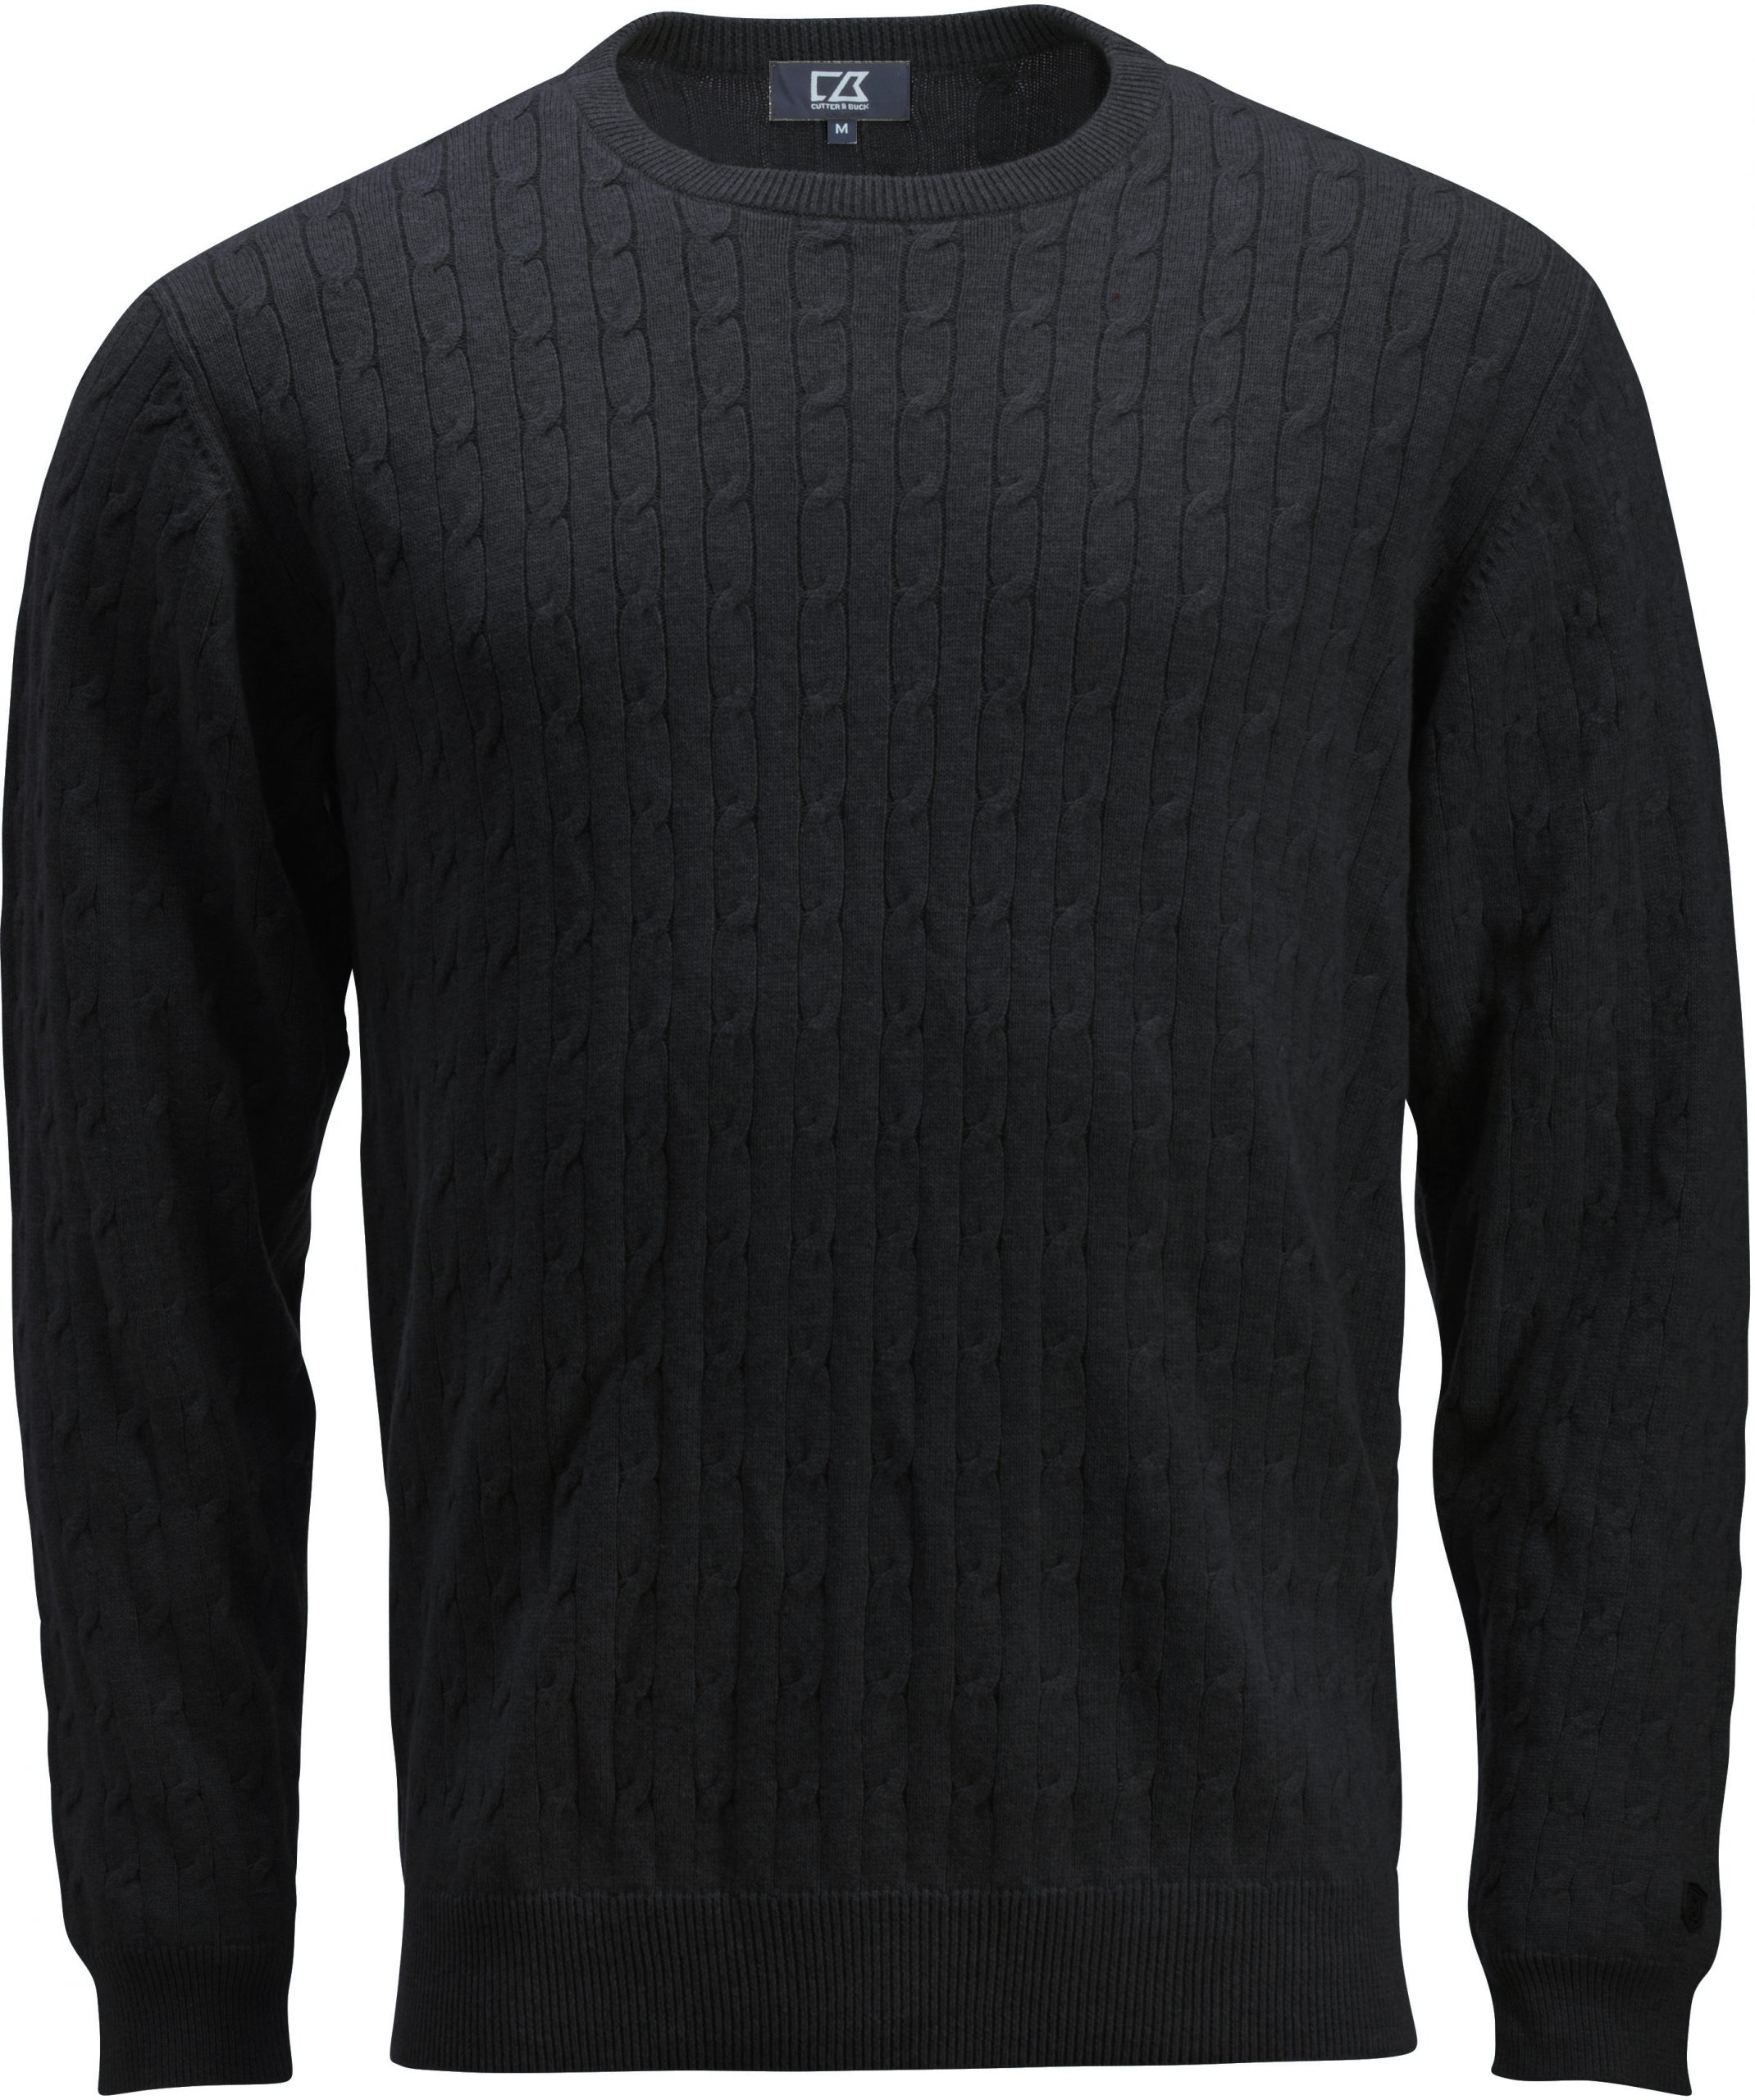 Cutterandbuck Blakely Knitted Sweater Men's Musta